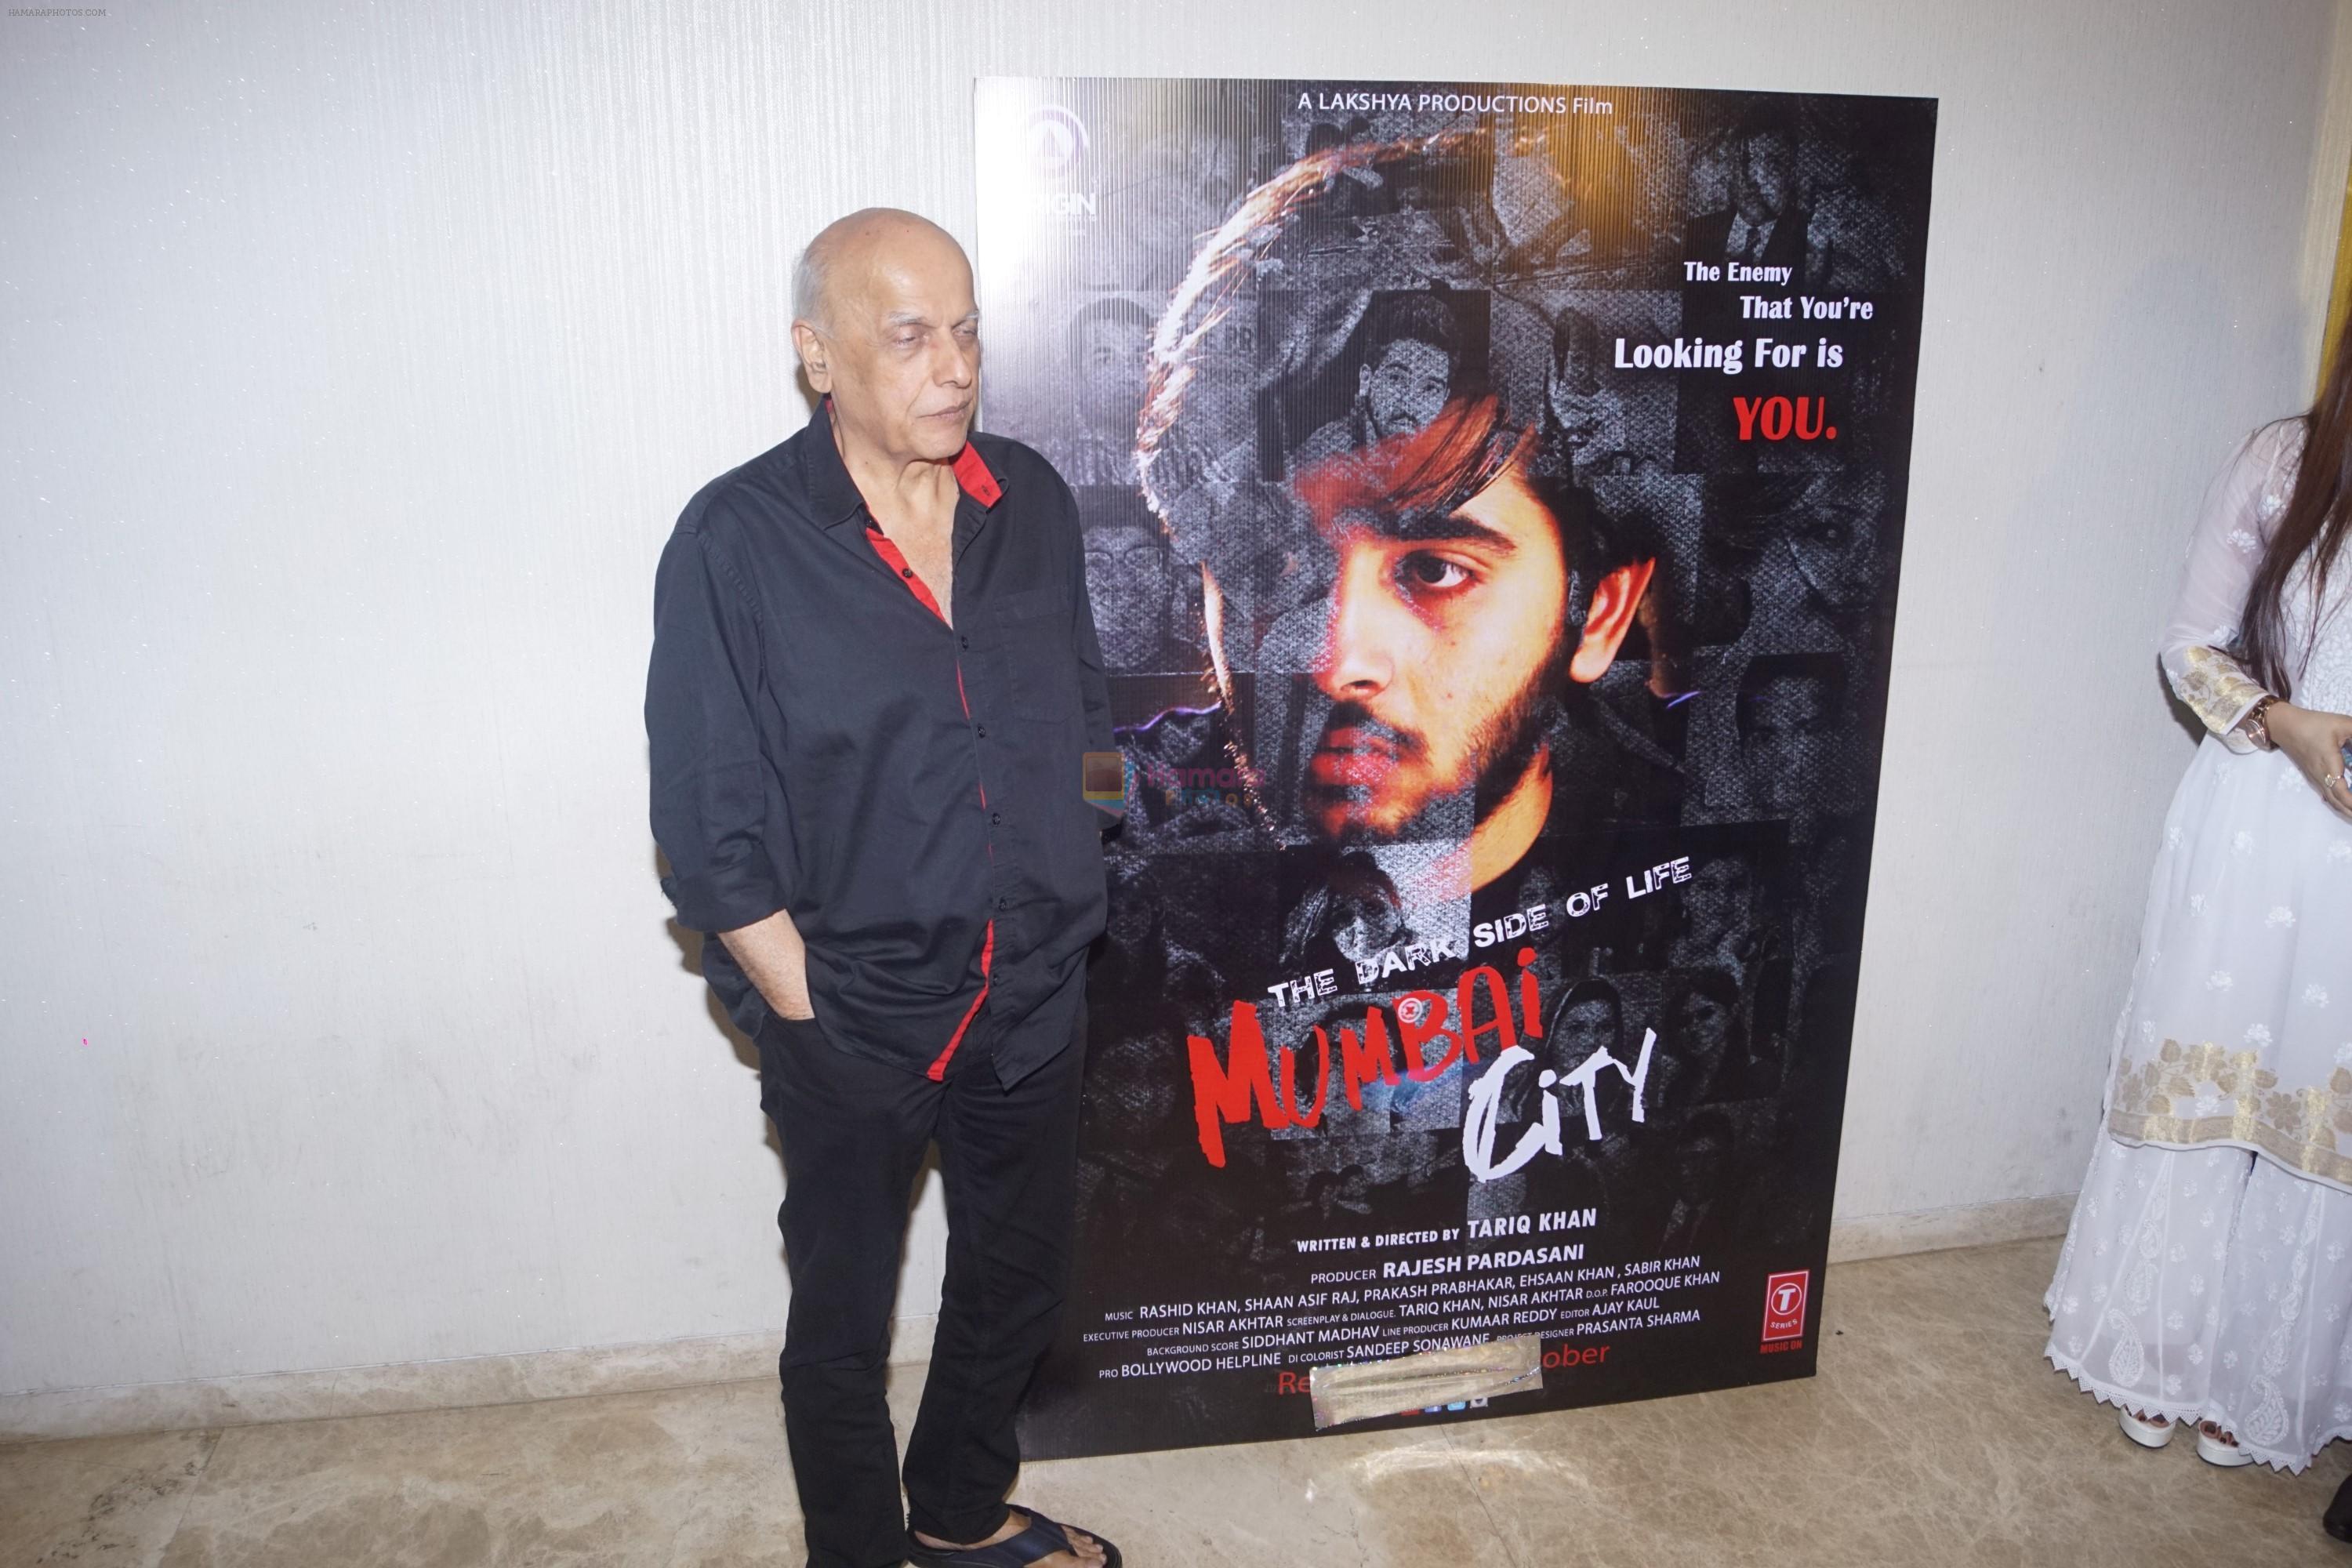 Mahesh Bhatt at the Trailer Launch of film The Dark Side of Life-Mumbai City in Mumbai on 10th Sept 2018